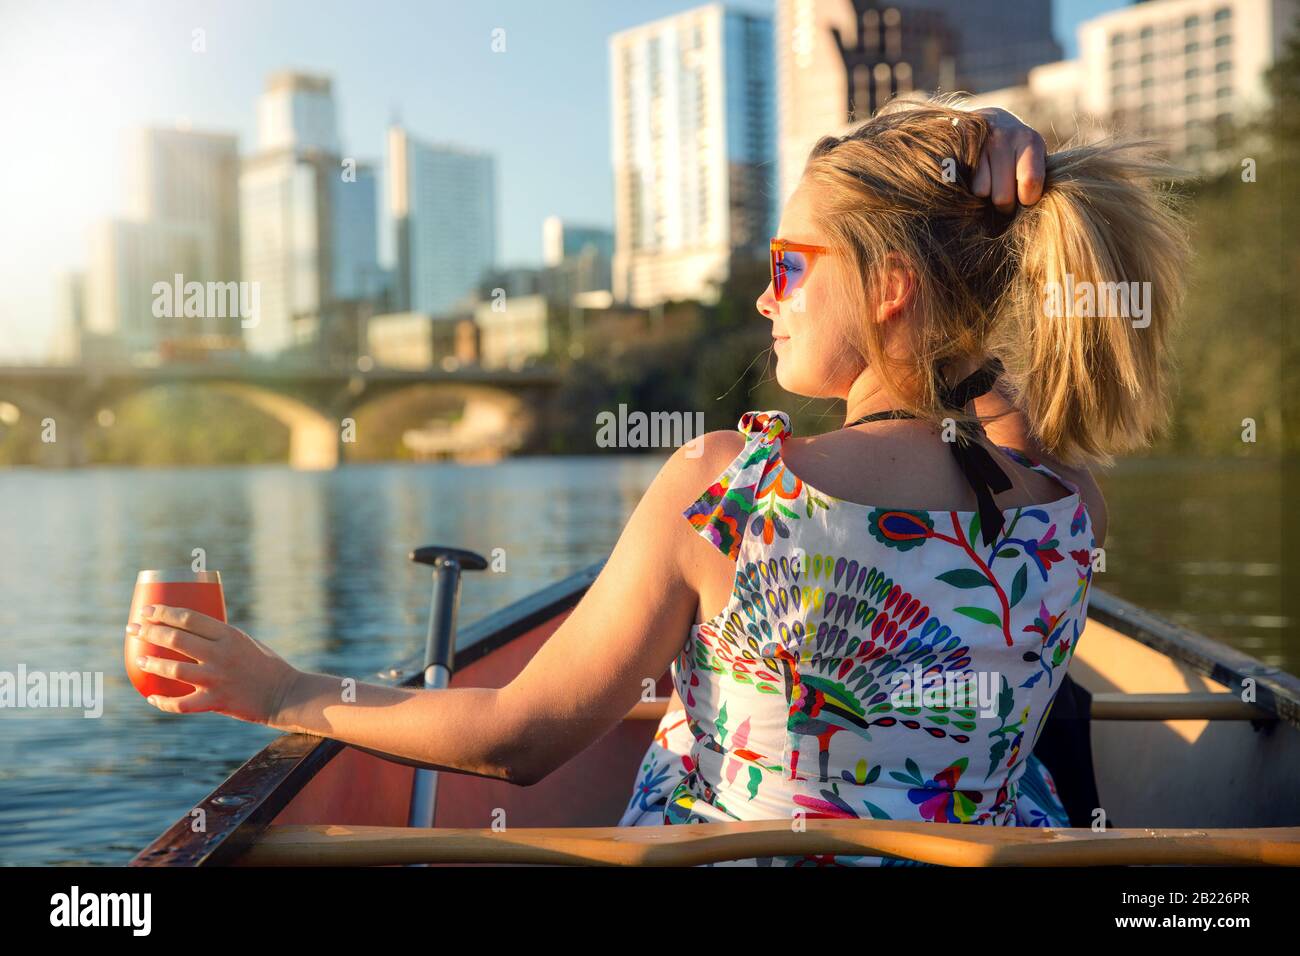 Lustige junge Frau in einer Sonnenbrille lächelt, genießt das Leben und macht Spaß mit dem Boot auf einem Fluss neben einer Skyline der Stadt Stockfoto